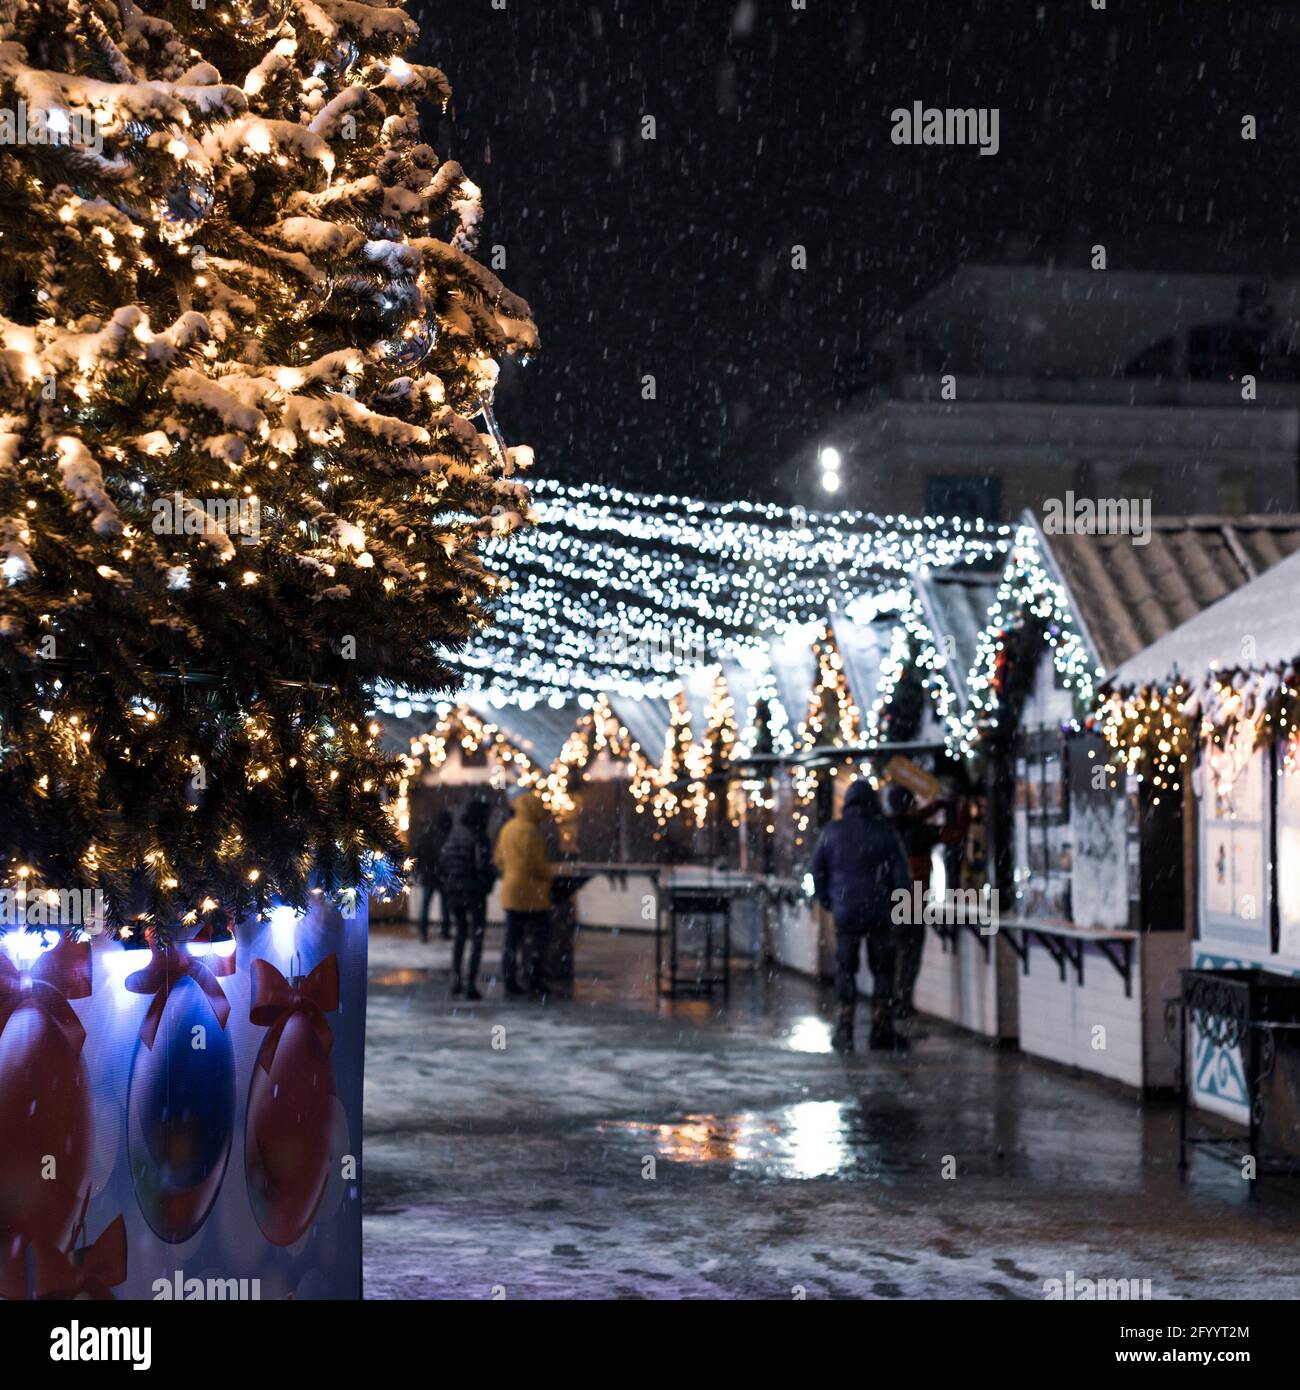 Festliche Weihnachten und der Neujahrsmarkt in der Stadt in der Nacht, fallender  Schnee, Neujahrsbaum und Häuser mit Girlanden Stockfotografie - Alamy